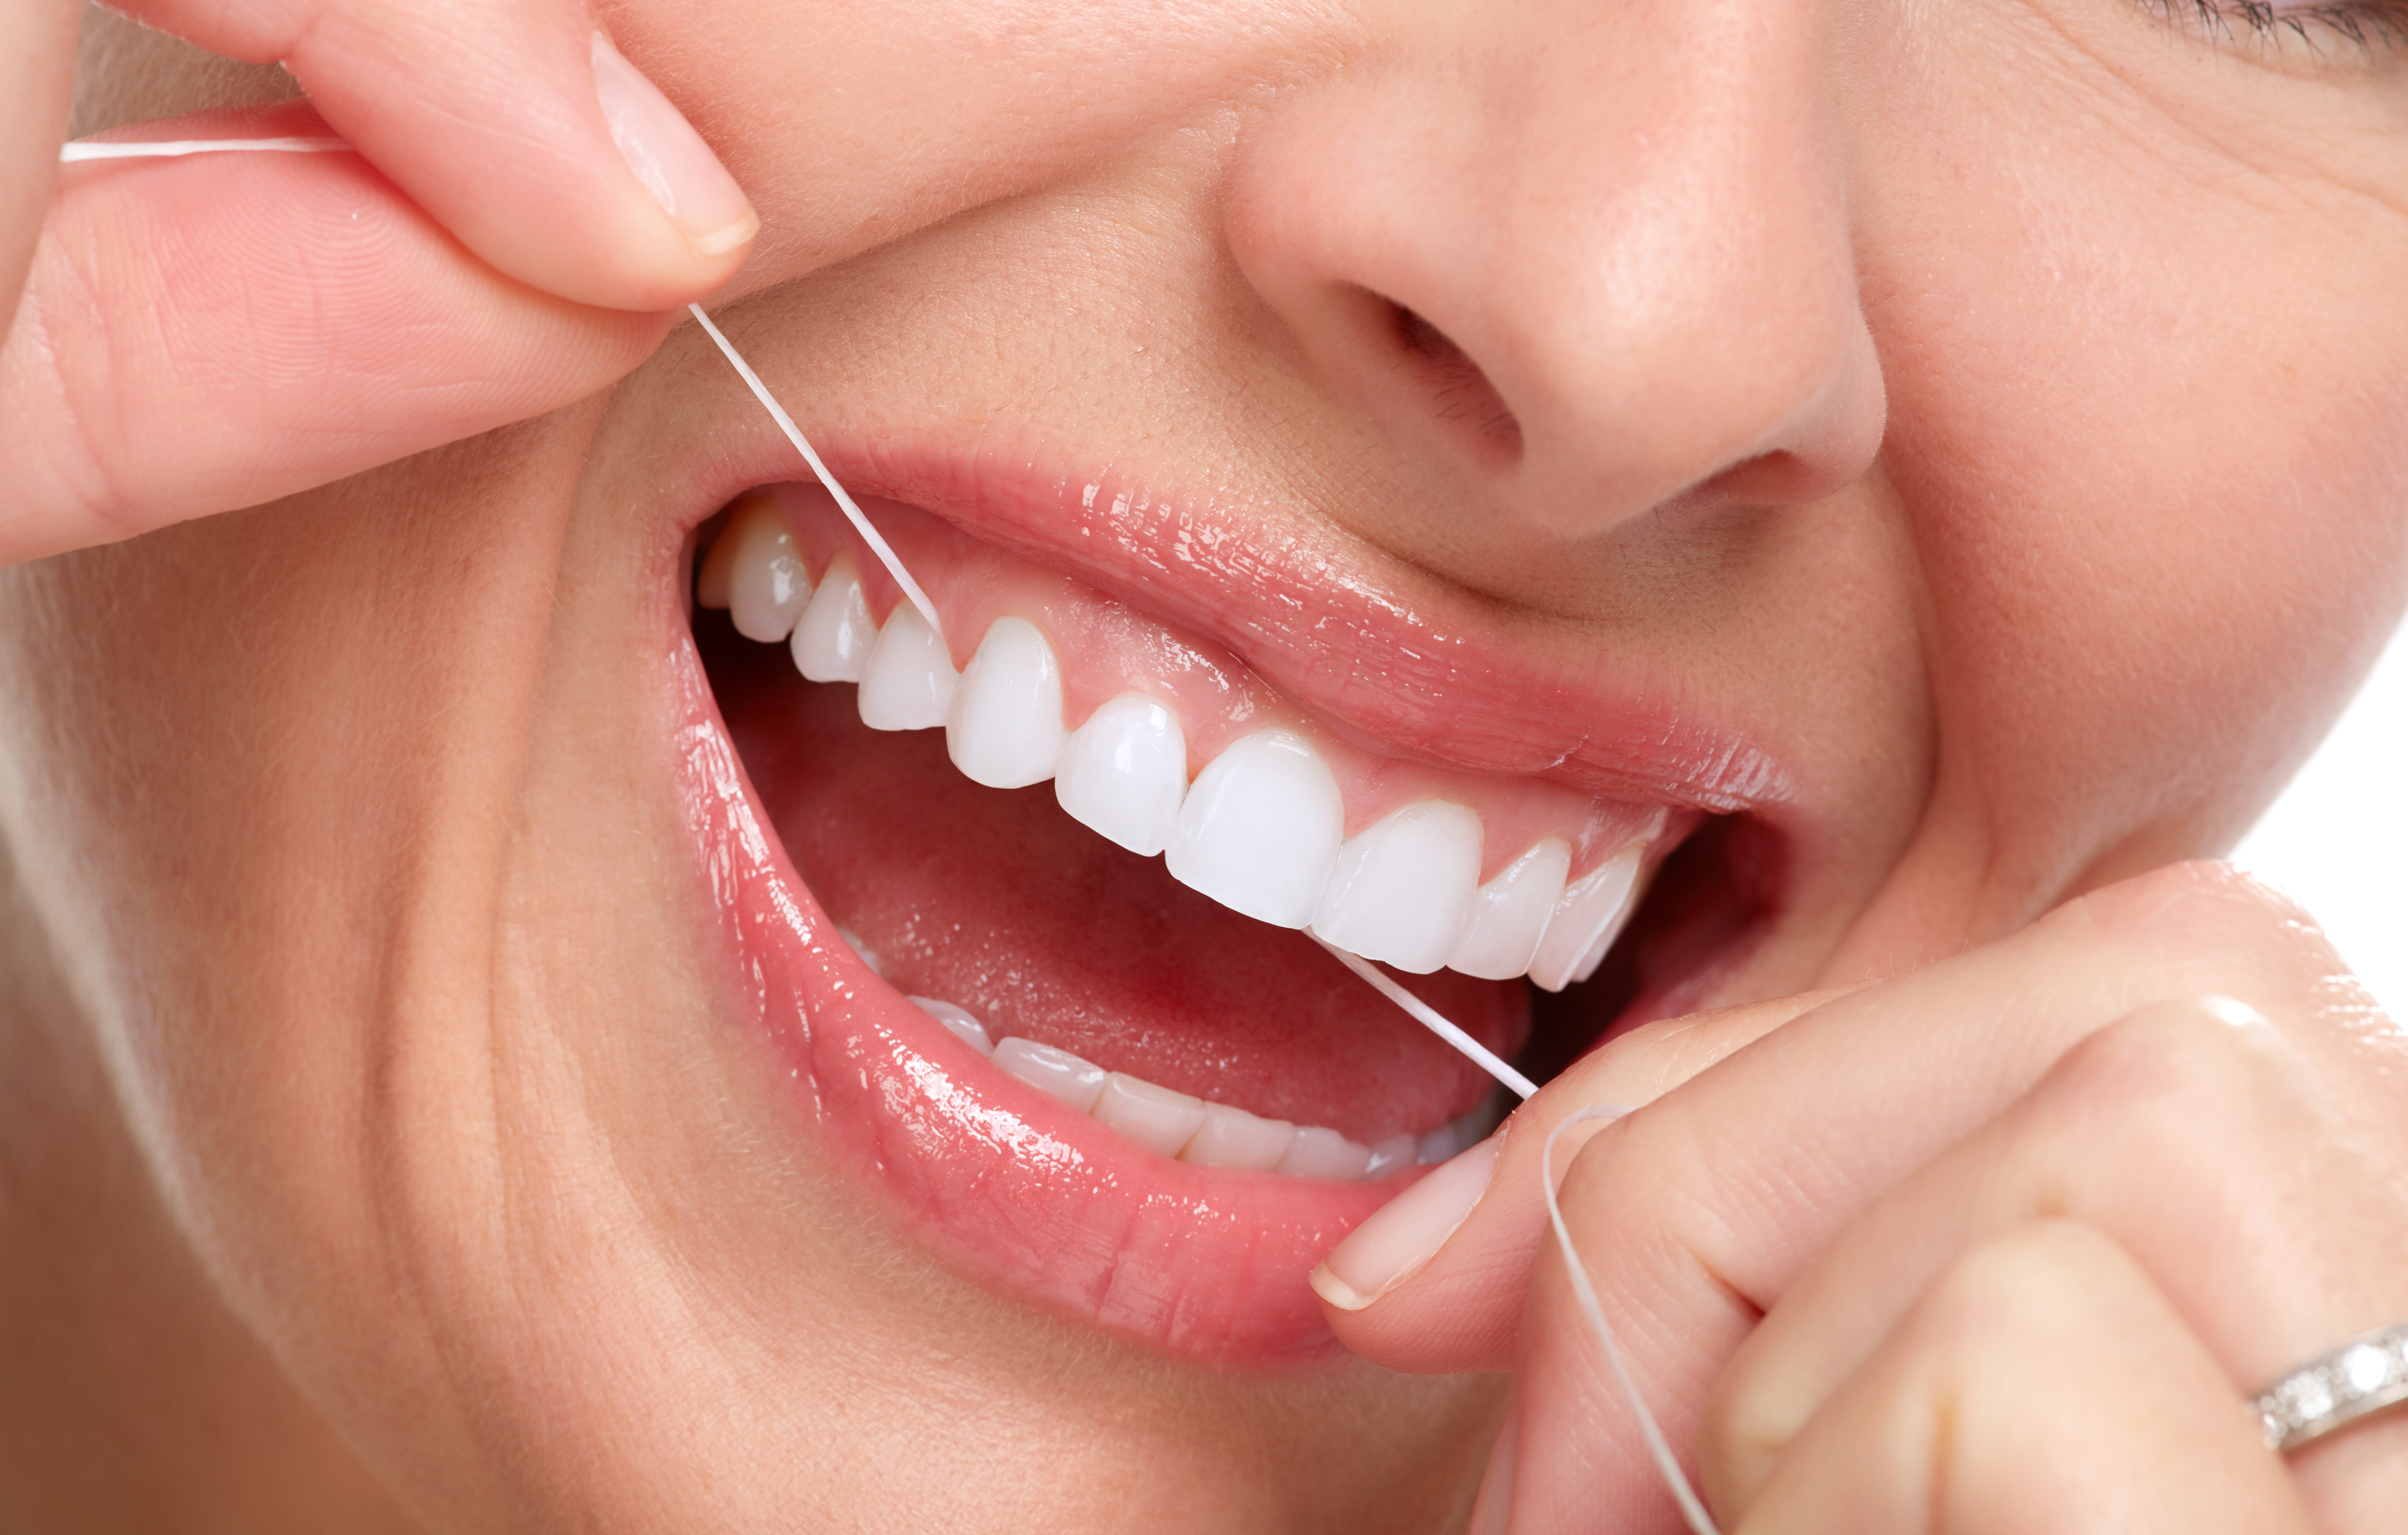 El uso regular del hilo dental remueve la placa. Además, también ayuda a prevenir la caries y reducir el riesgo de desarrollar enfermedad de las encías. (Foto Prensa Libre: Shutterstock)